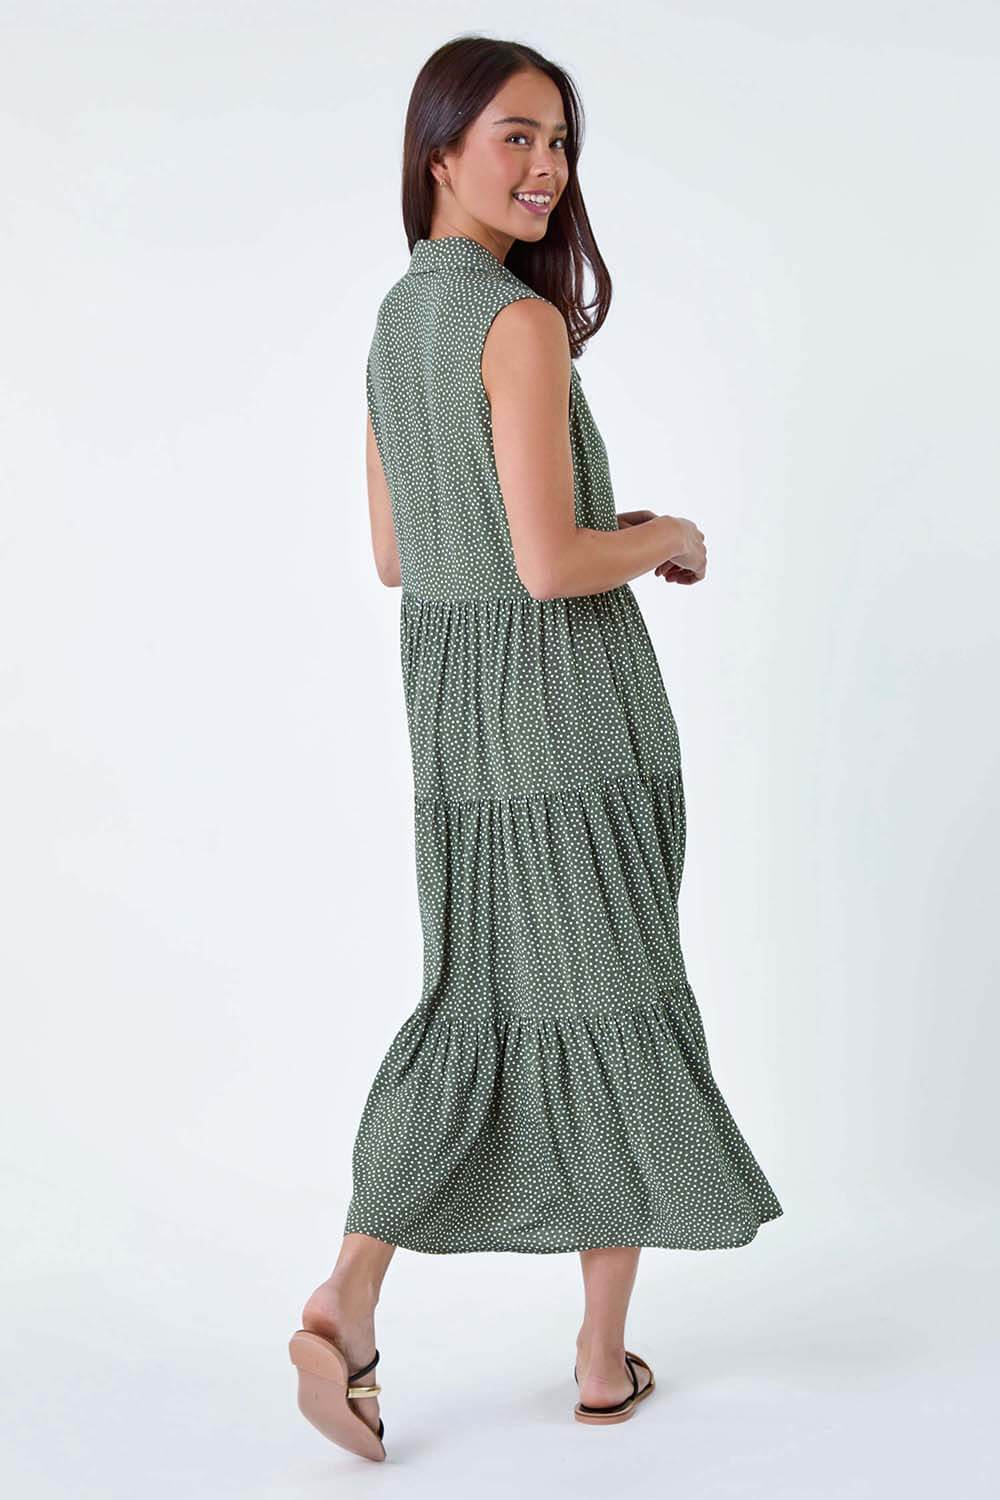 KHAKI Petite Polka Dot Midi Shirt Dress, Image 3 of 5